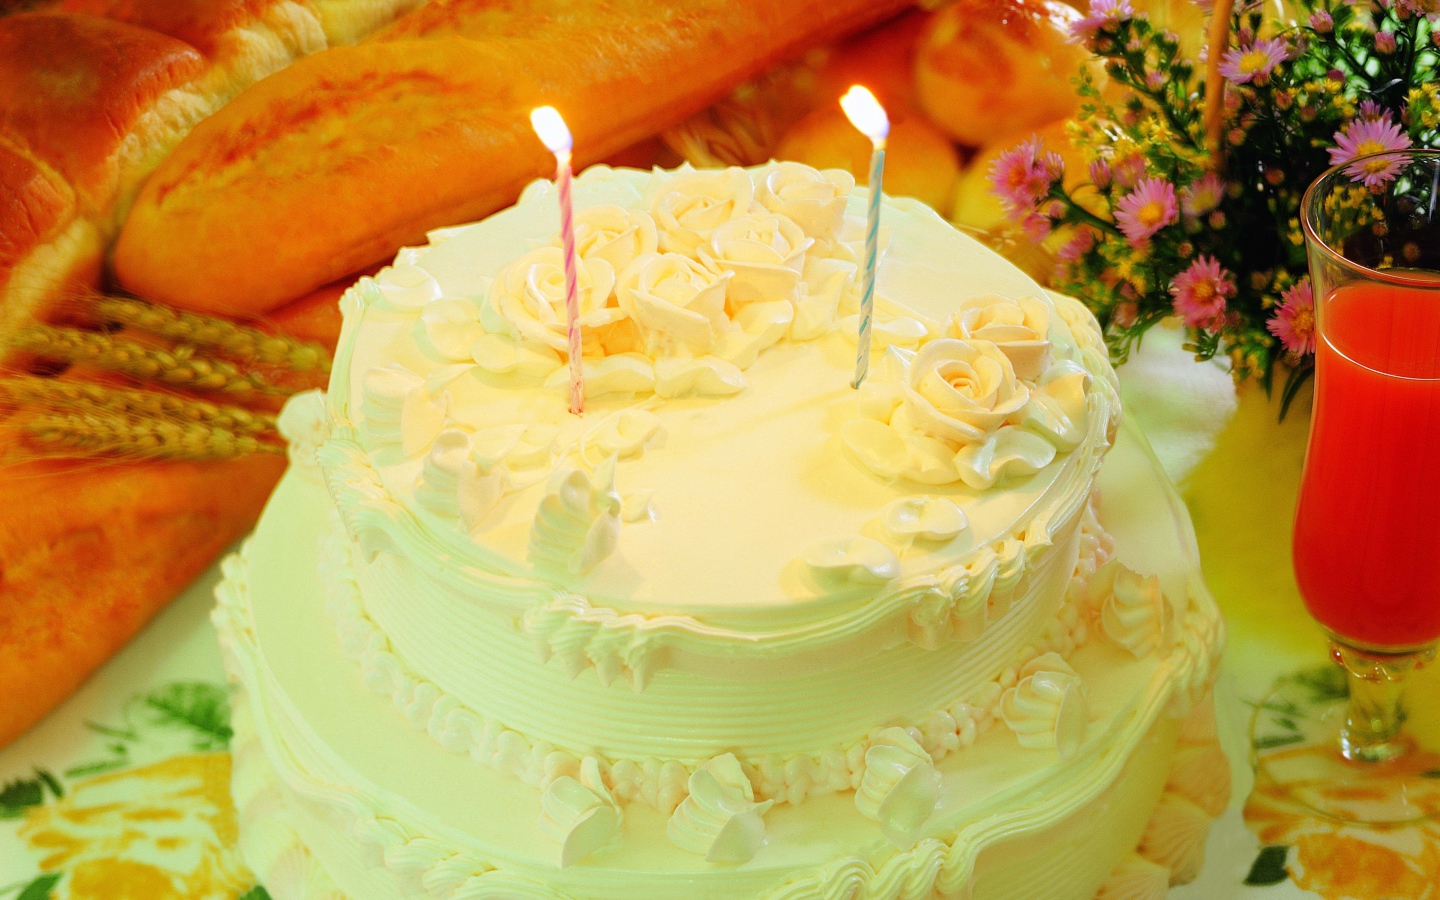 Красивый торт с кремом и двумя свечами 